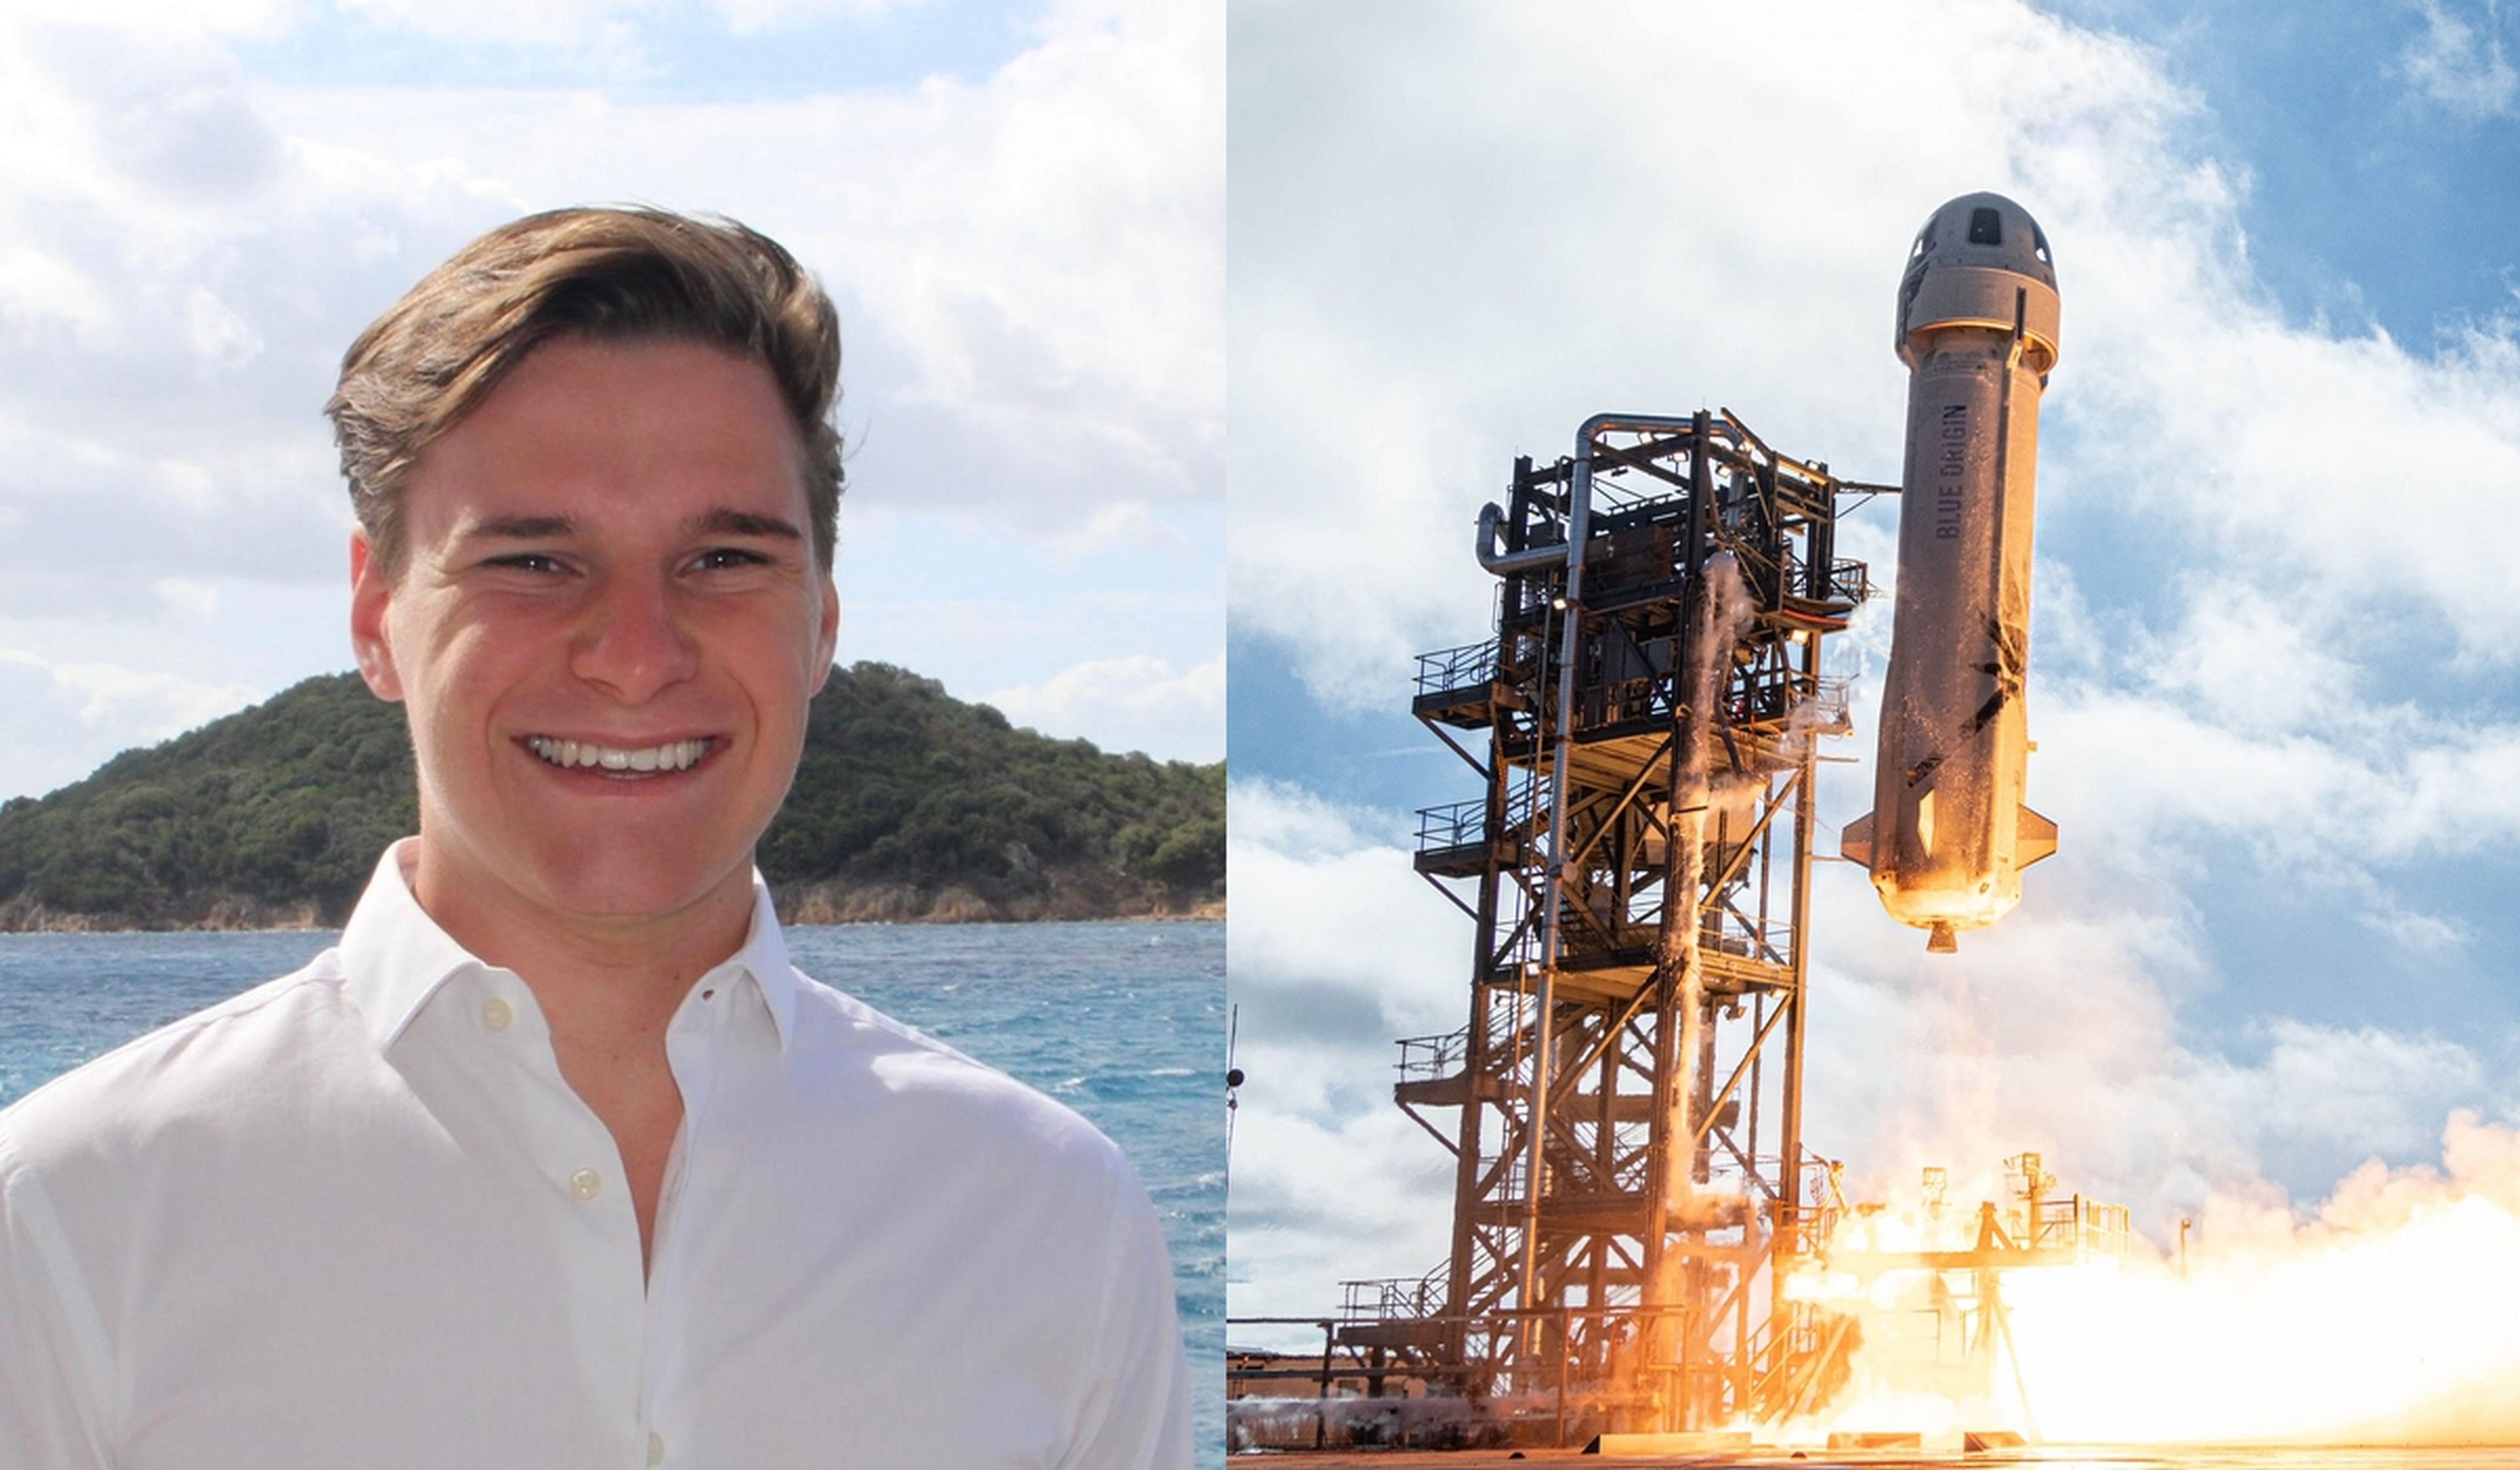 Con apenas 18 años, Oliver Daemen será la persona más joven en viajar al espacio